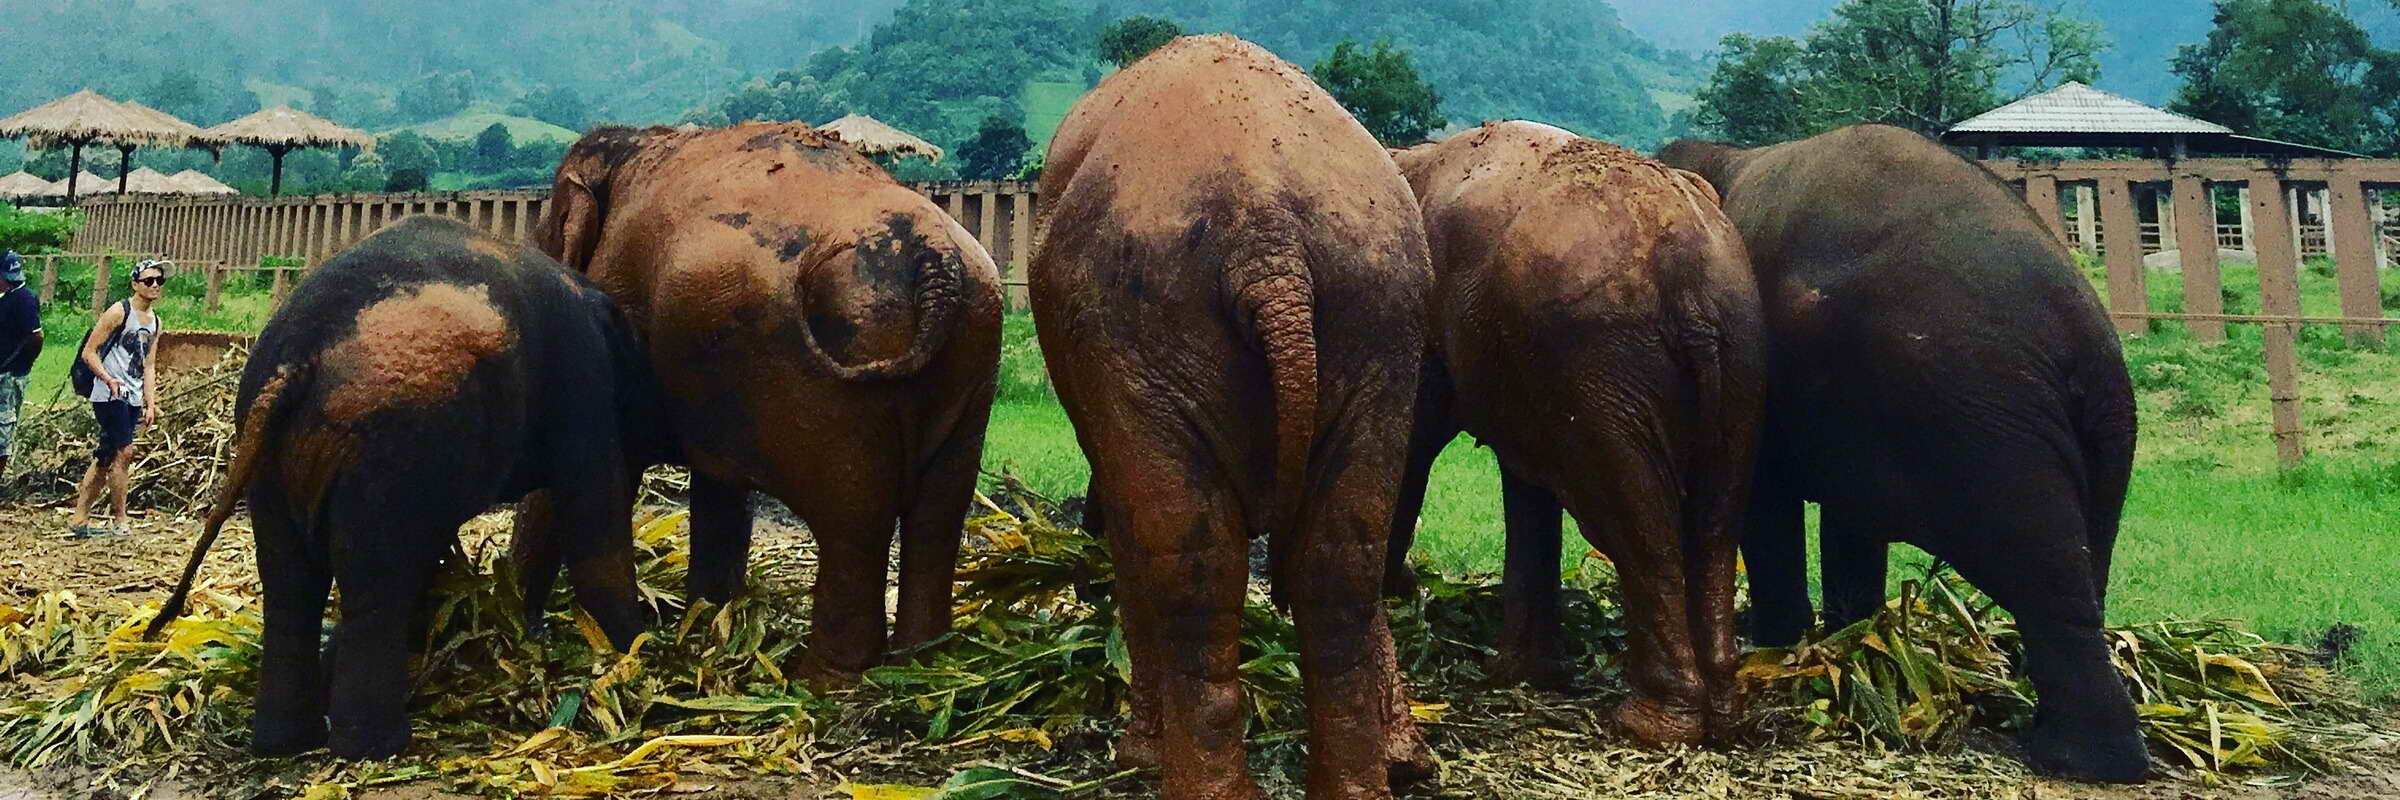 Nach einem ausgiebigen Schlammbad sehen die Elefanten im Elephant Nature Park eher braun als grau aus